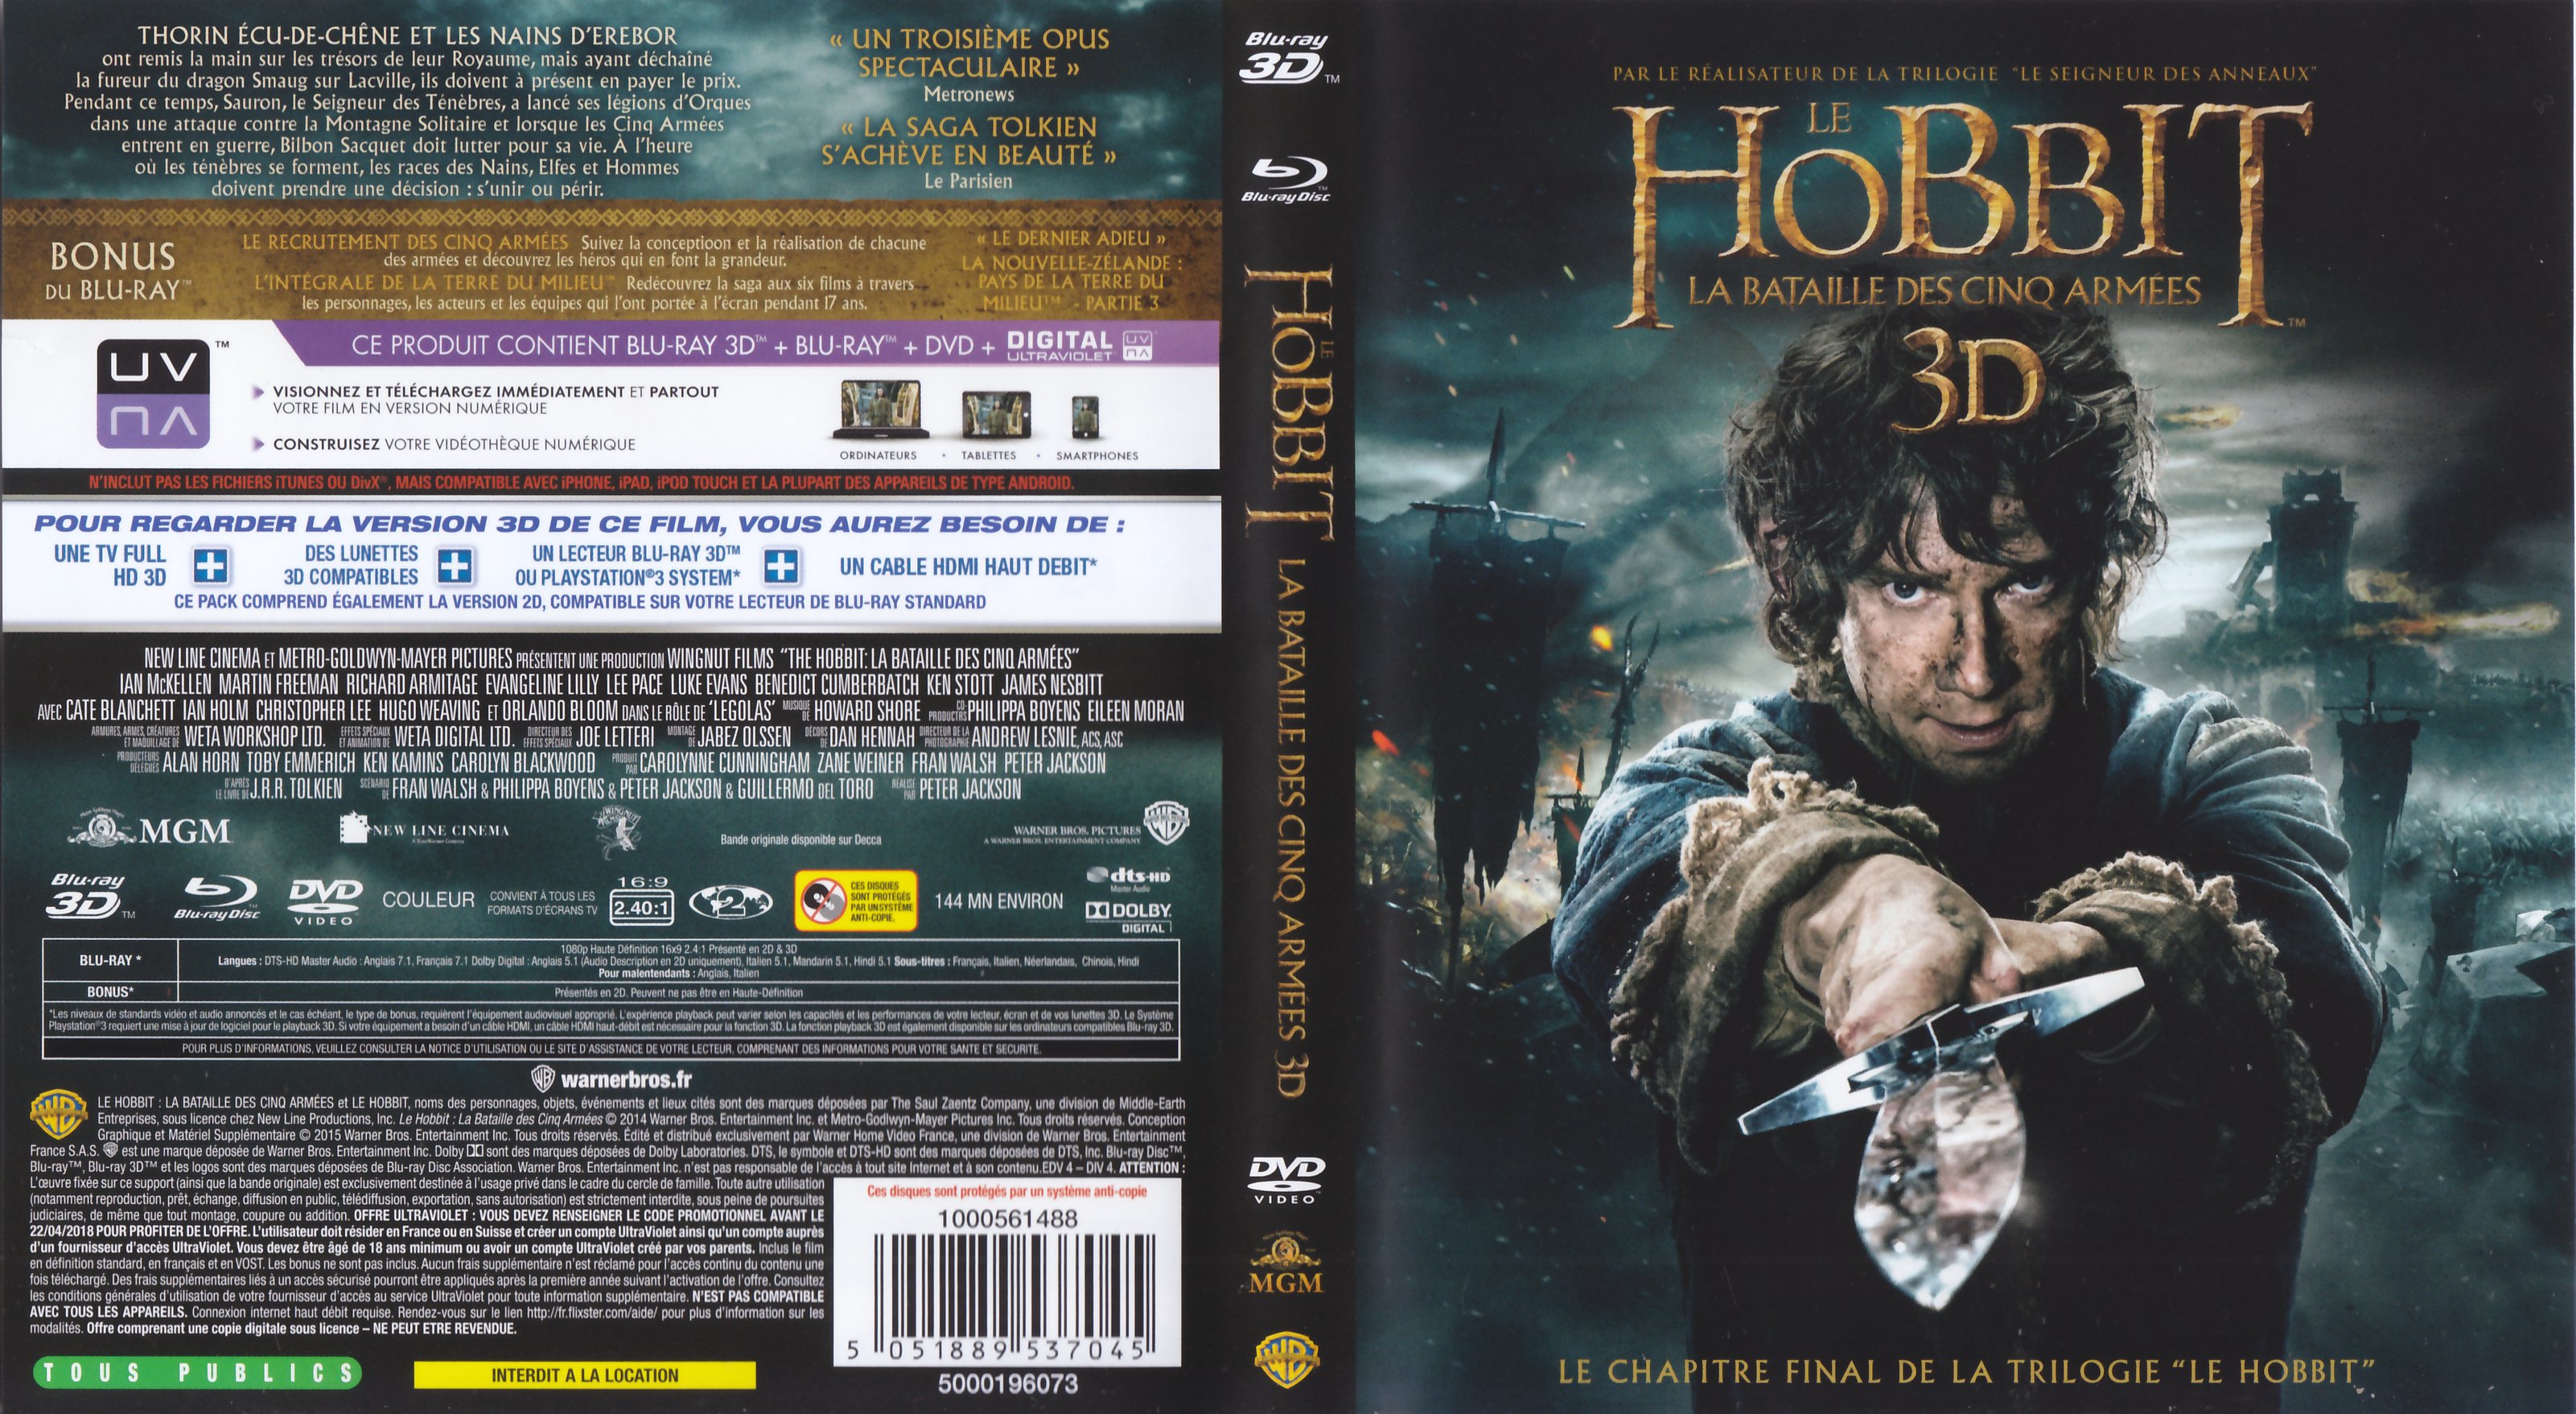 Jaquette DVD Le Hobbit la Bataille des Cinq Armes 3D (BLU-RAY) v3